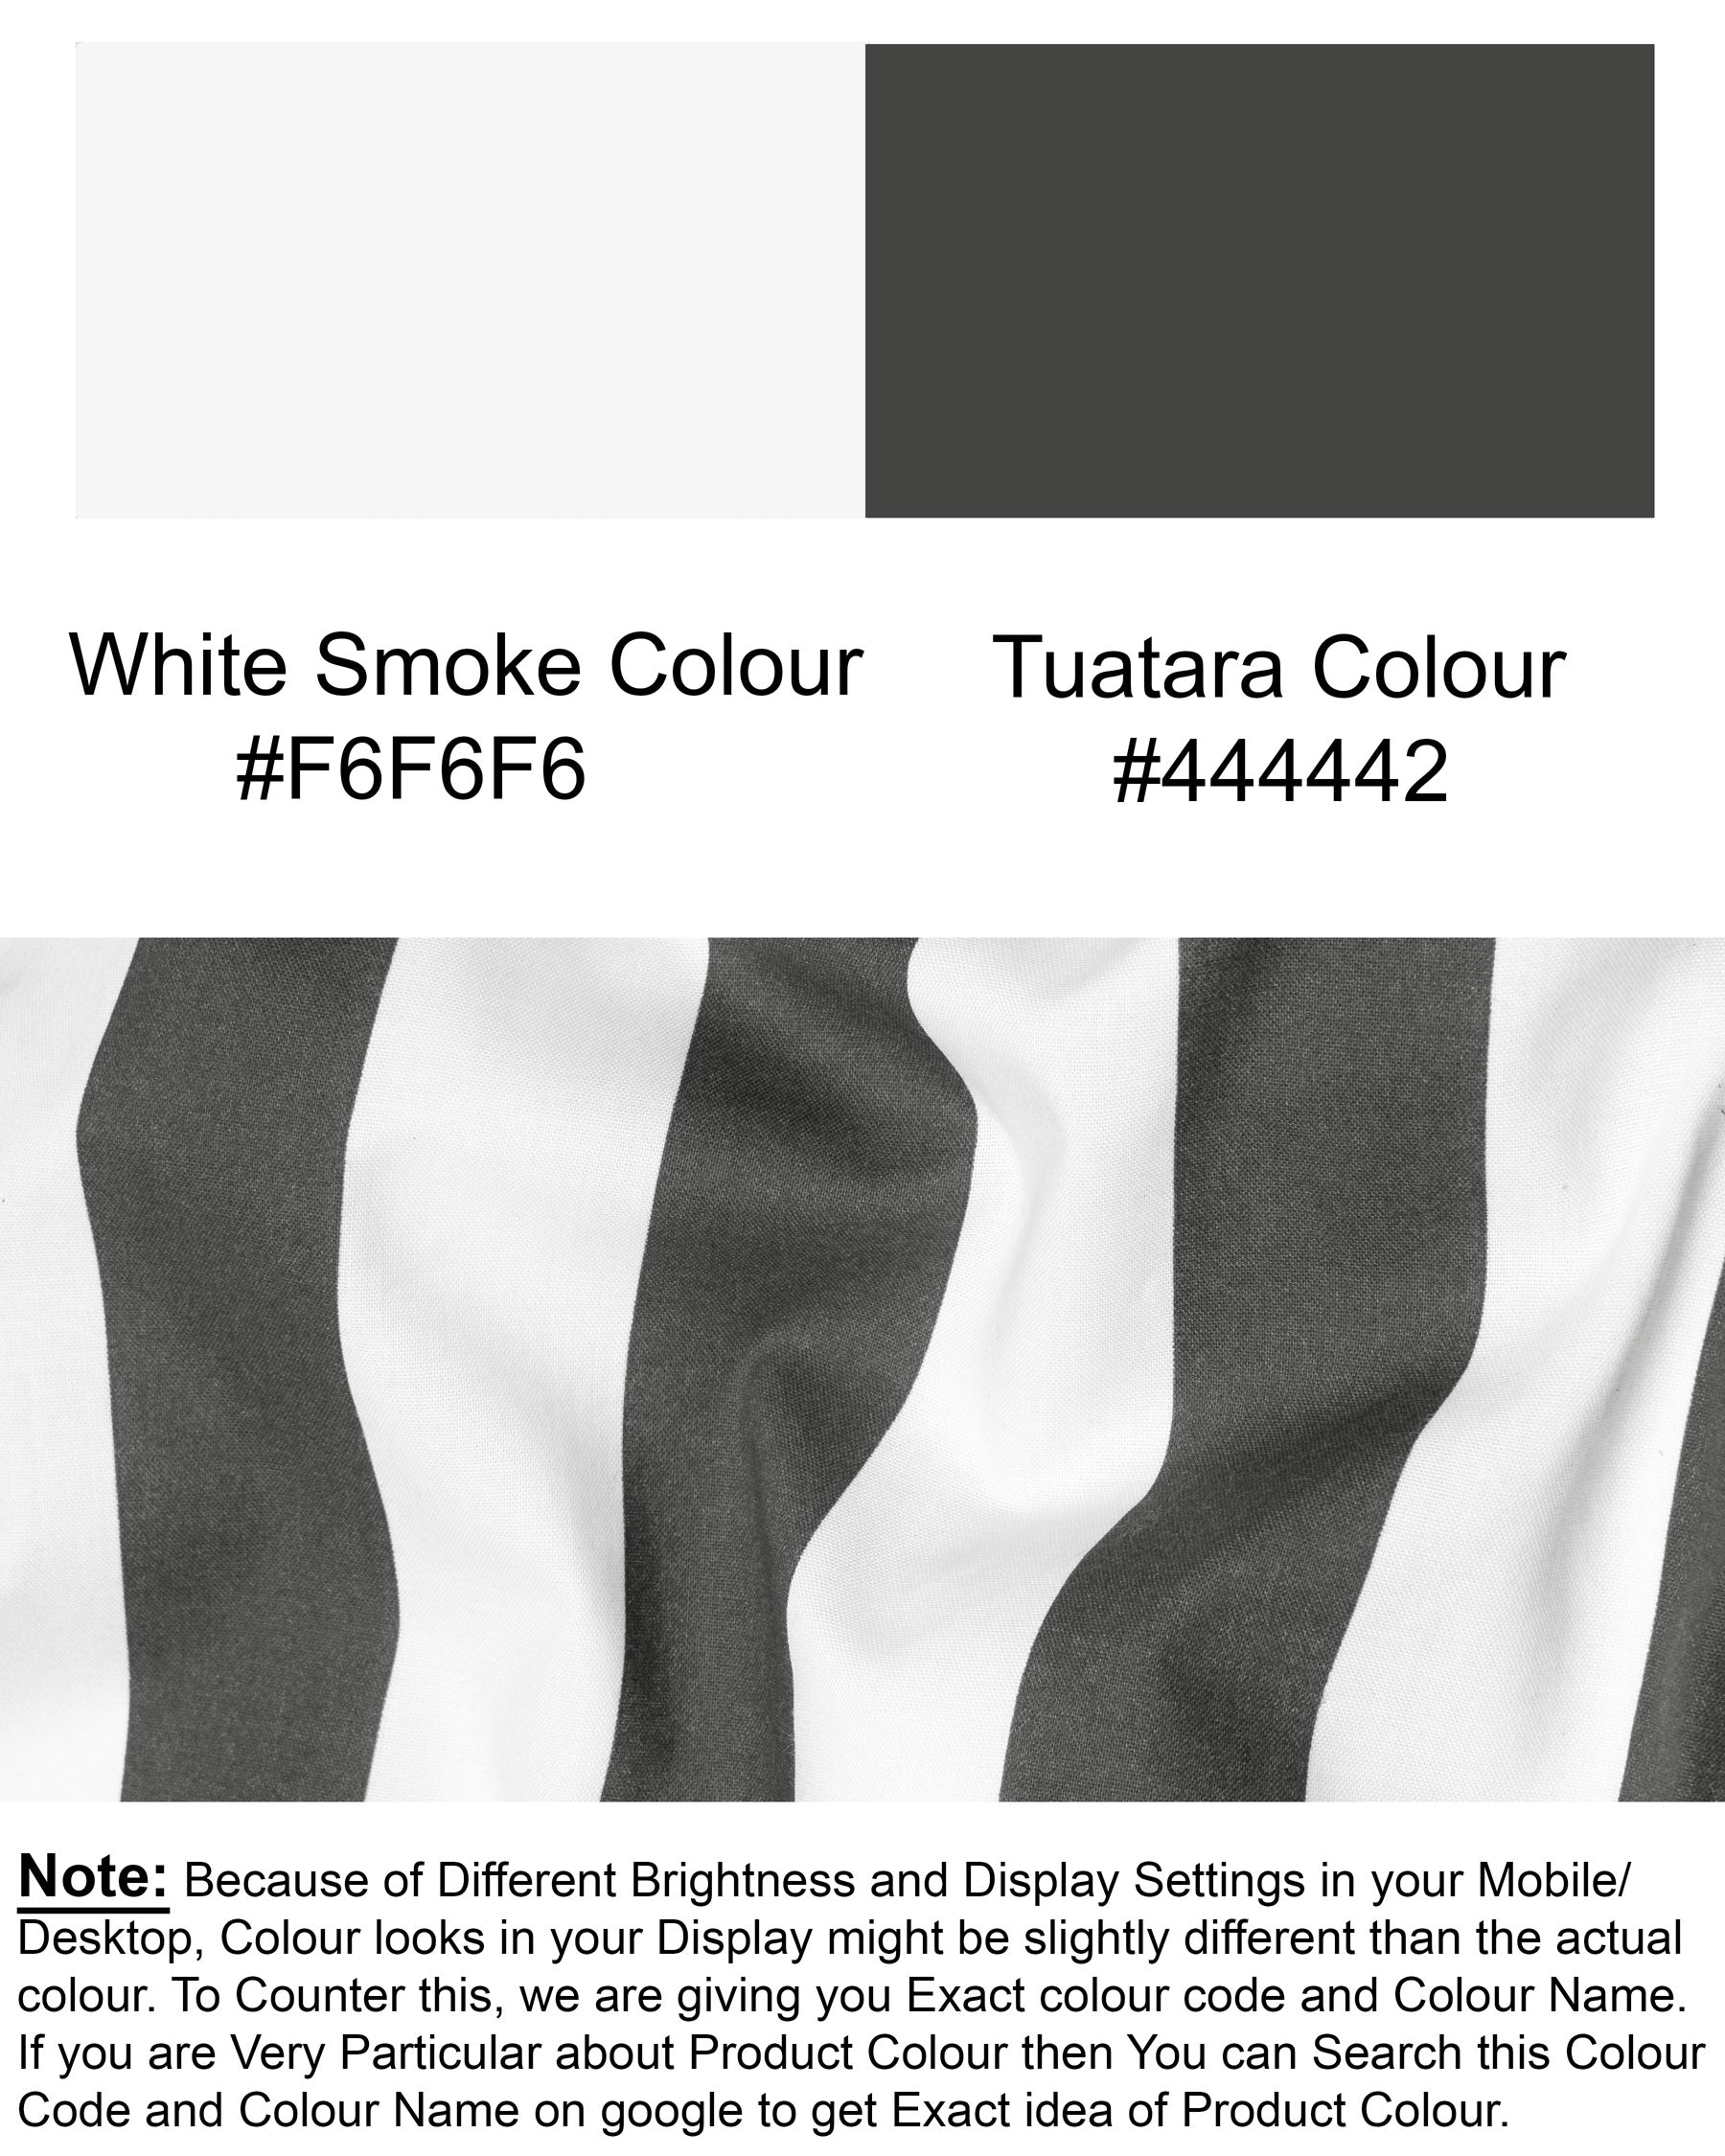 White Smoke and Tuatara Striped Premium Cotton Shirt 5627-CA-38, 5627-CA-H-38, 5627-CA-39, 5627-CA-H-39, 5627-CA-40, 5627-CA-H-40, 5627-CA-42, 5627-CA-H-42, 5627-CA-44, 5627-CA-H-44, 5627-CA-46, 5627-CA-H-46, 5627-CA-48, 5627-CA-H-48, 5627-CA-50, 5627-CA-H-50, 5627-CA-52, 5627-CA-H-52